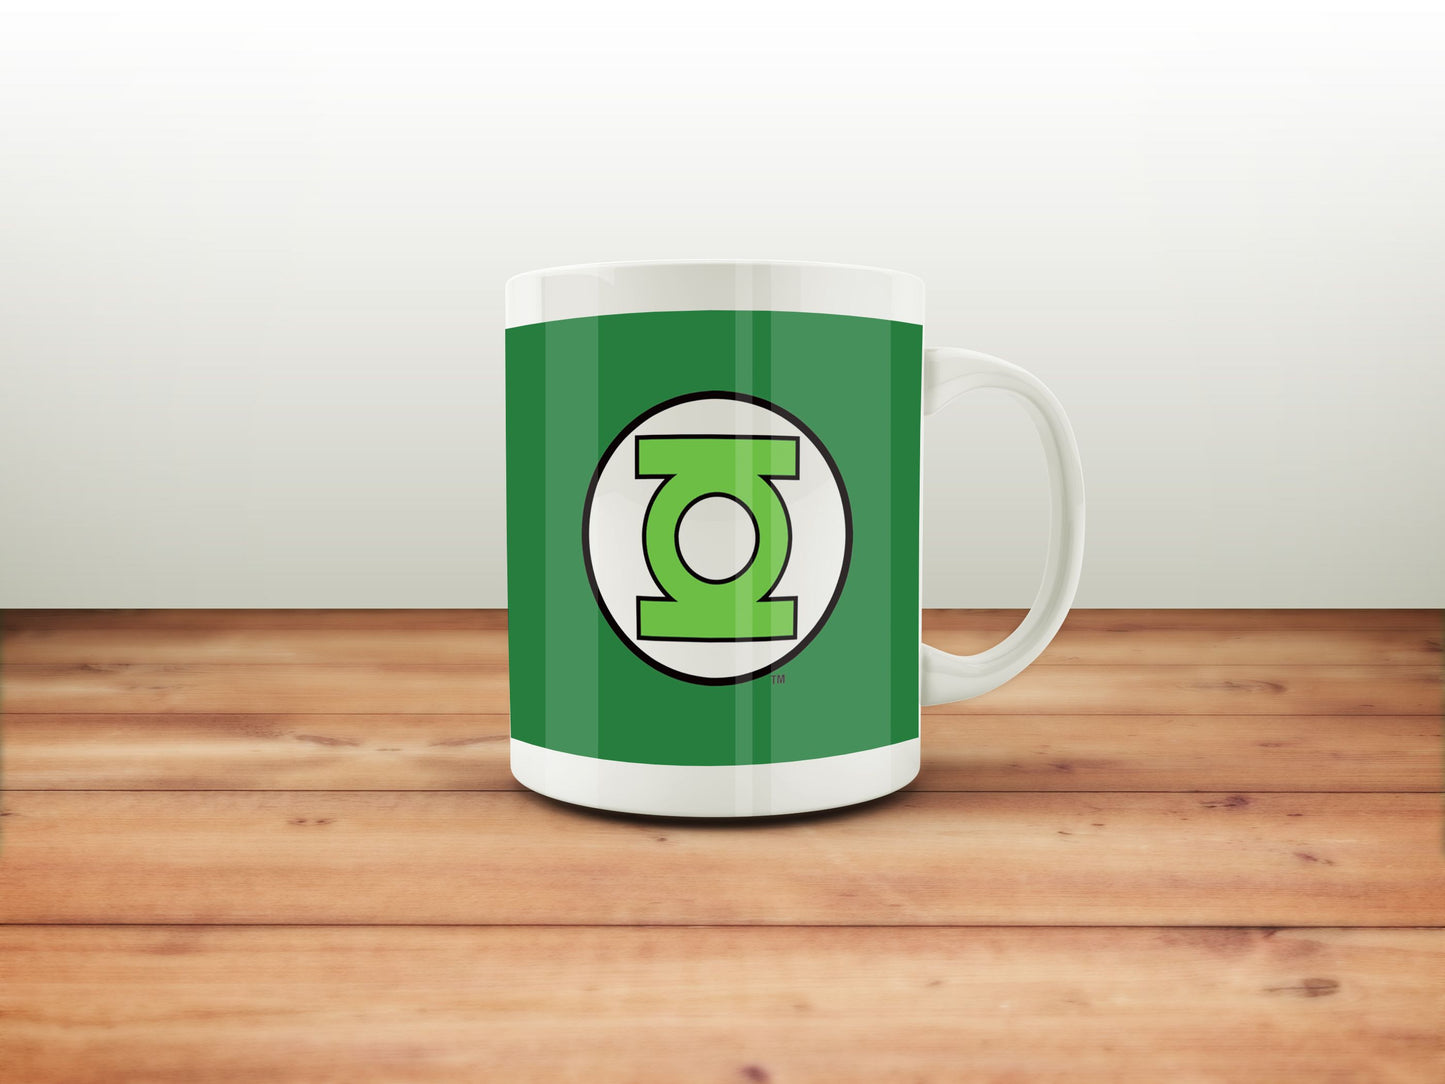 DC Comics Green Lantern Mug - Logo